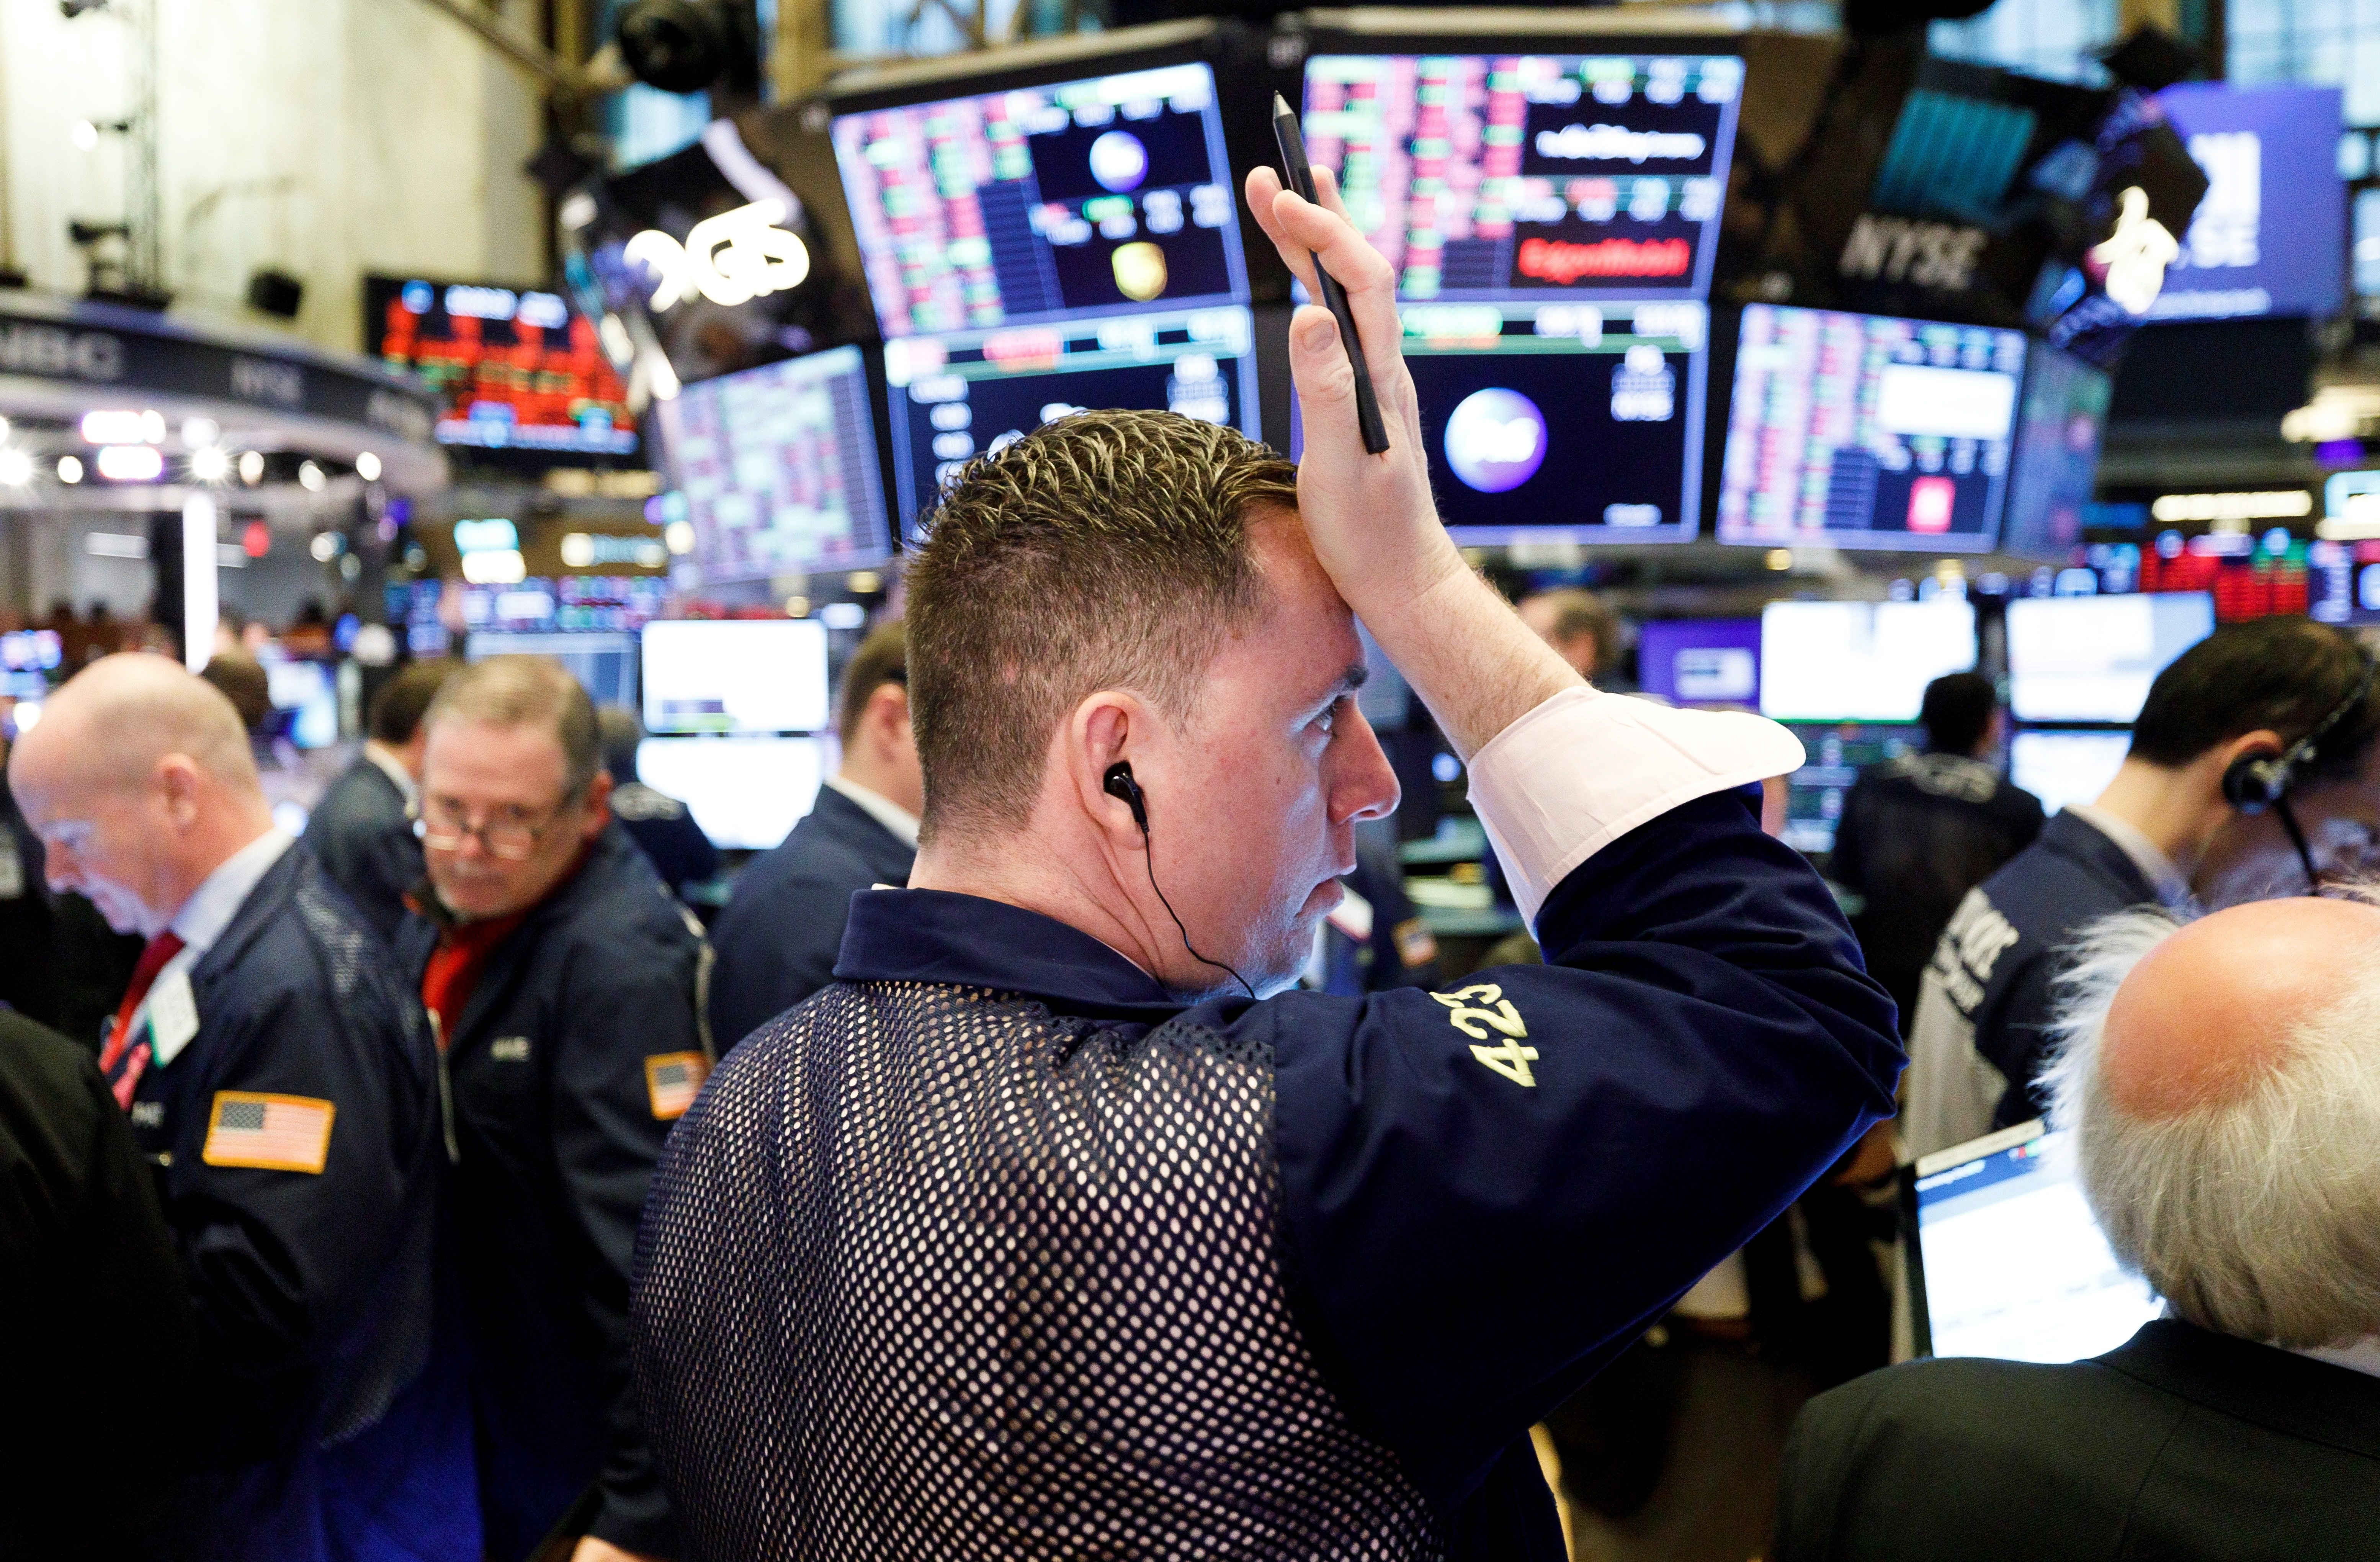 El Dow Jones se desploma 3.000 puntos en peor día de Wall Street desde 1987